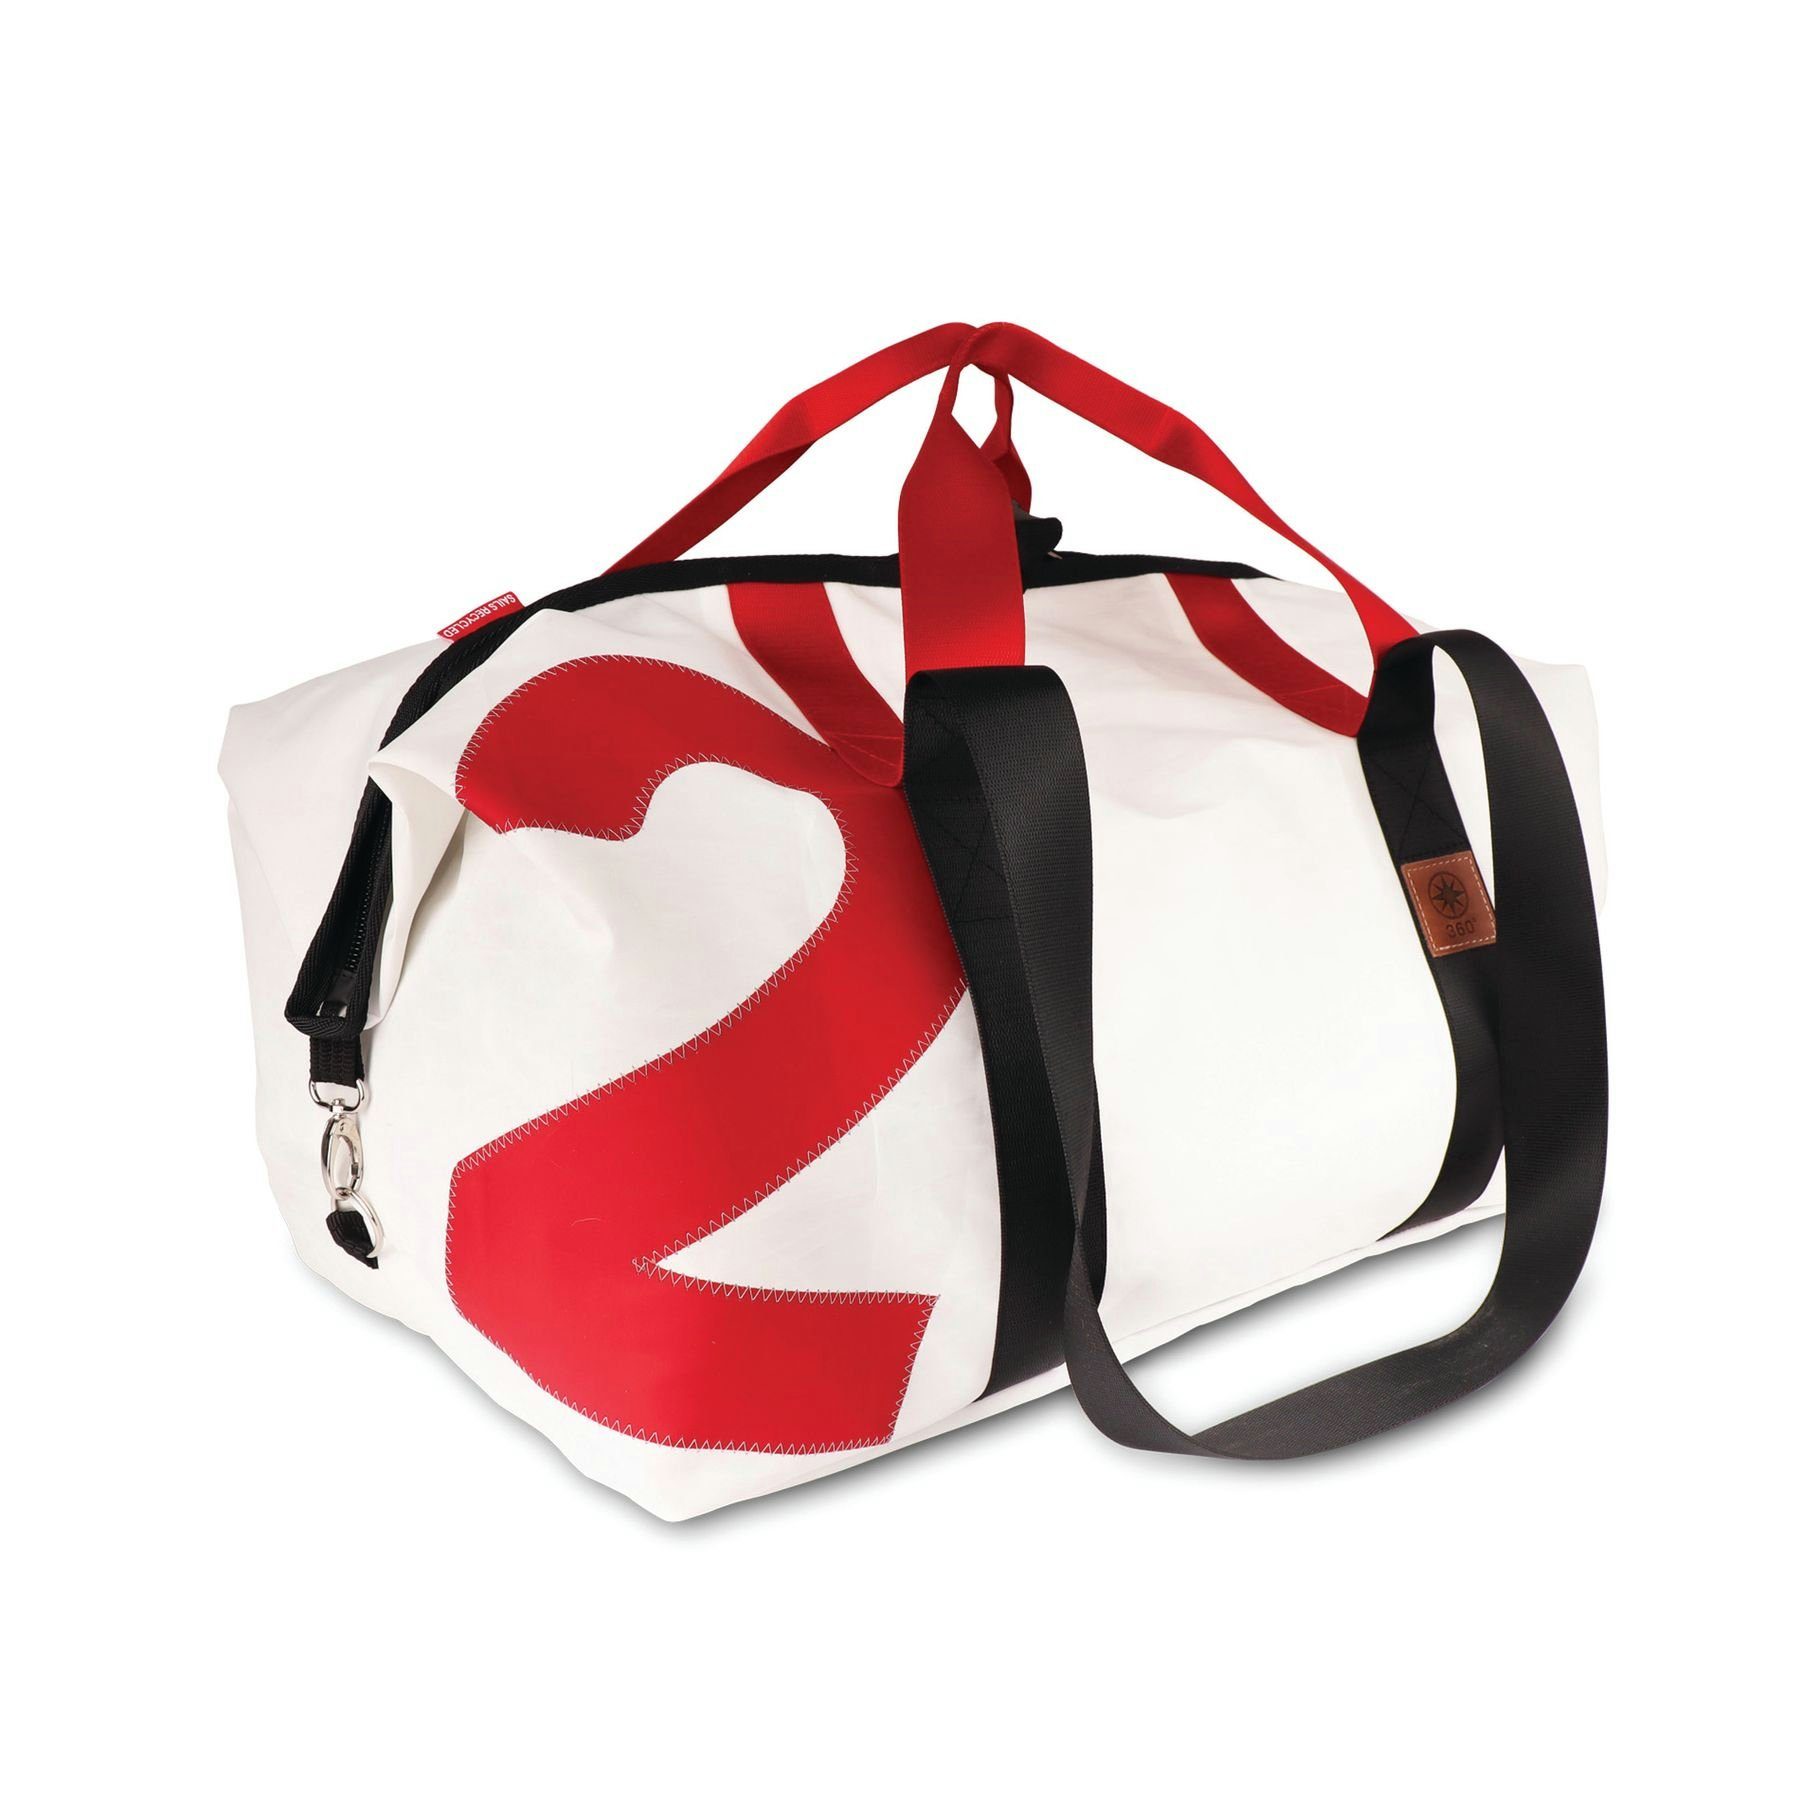 weiß mit Reisetasche Weiß/Rot Zahl rot, Kutter Reisetasche XL Gurt 360Grad rot/schwarz